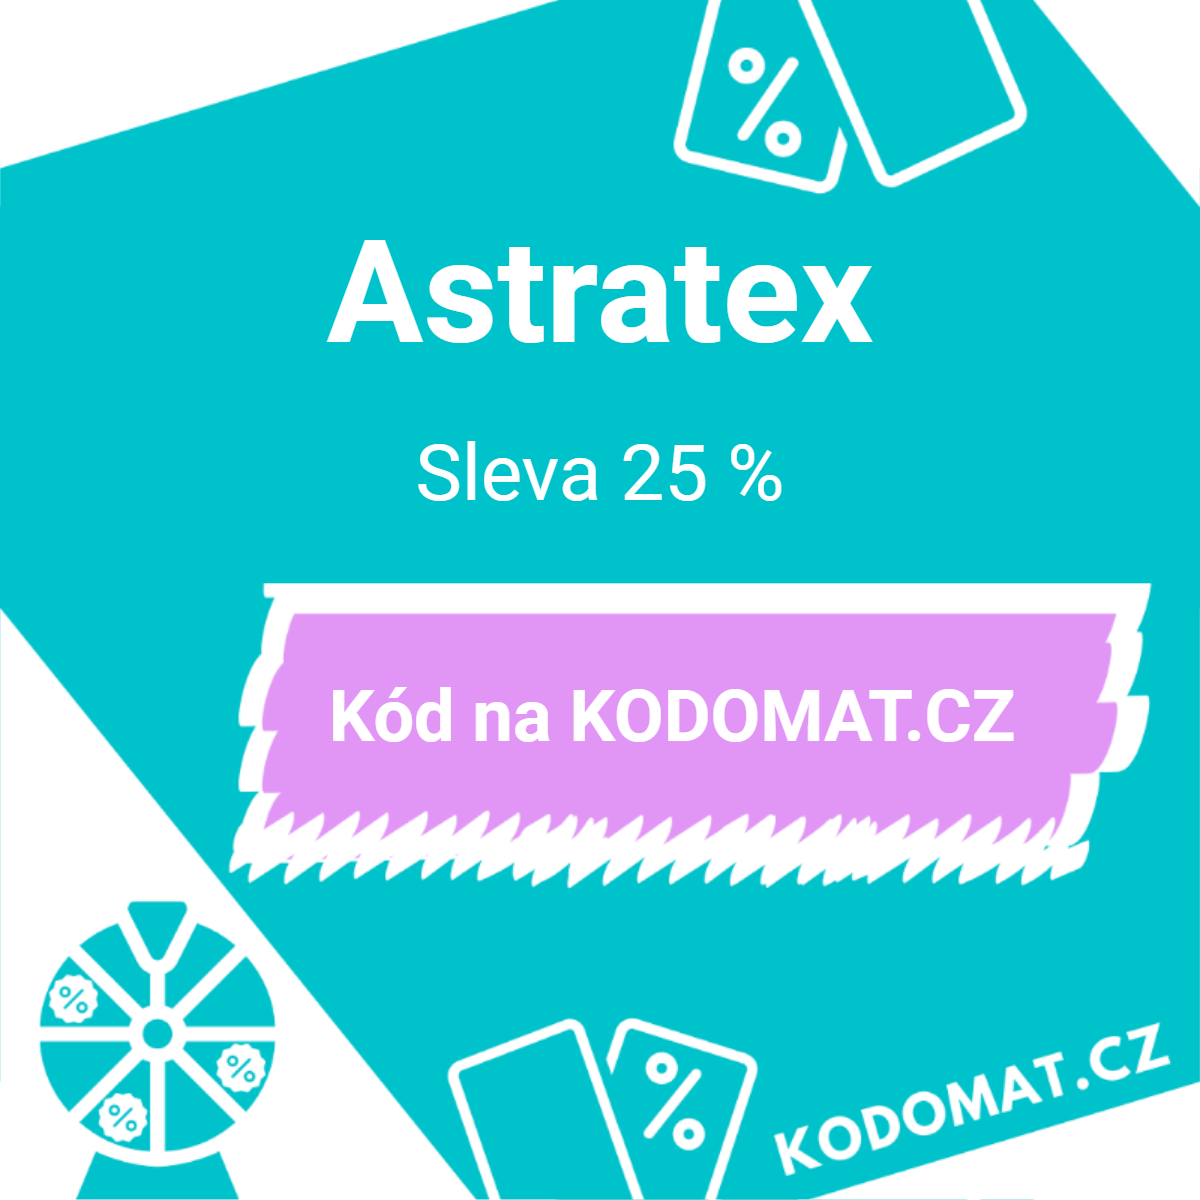 Astratex slevový kód od Petry: Sleva 25 %